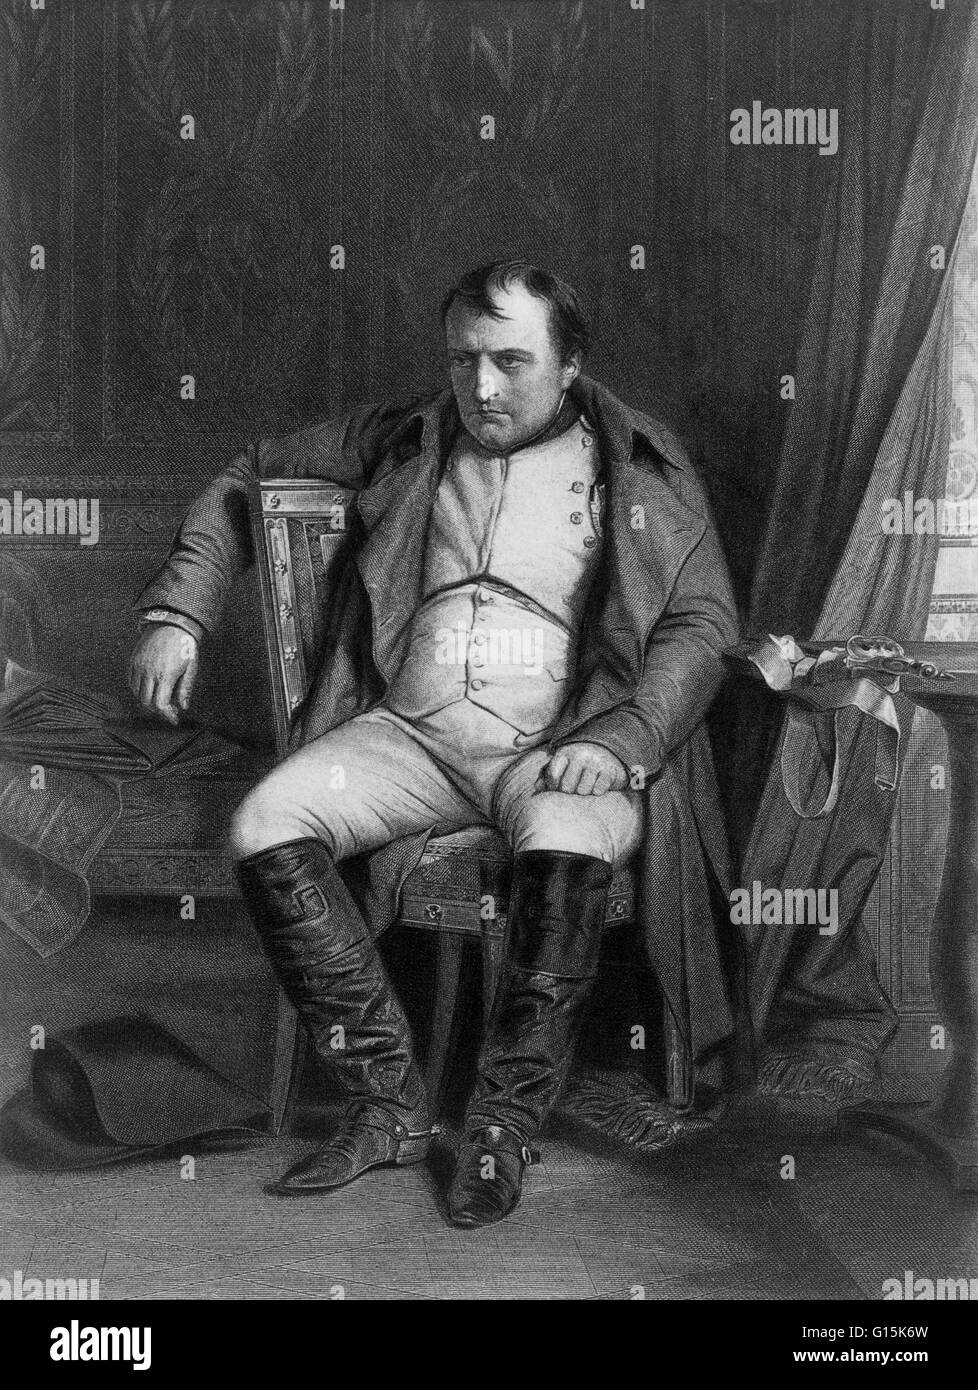 Gravur von Napoleon nach seiner Niederlage in Fontainebleau, kurz vor seinem Exil auf Elba. Napoleon Bonaparte (1769-1821) war ein französischer militärischer und politischer Führer während der letzten Stadien der französischen Revolution. Als Napoleon I, war er Kaiser von Stockfoto